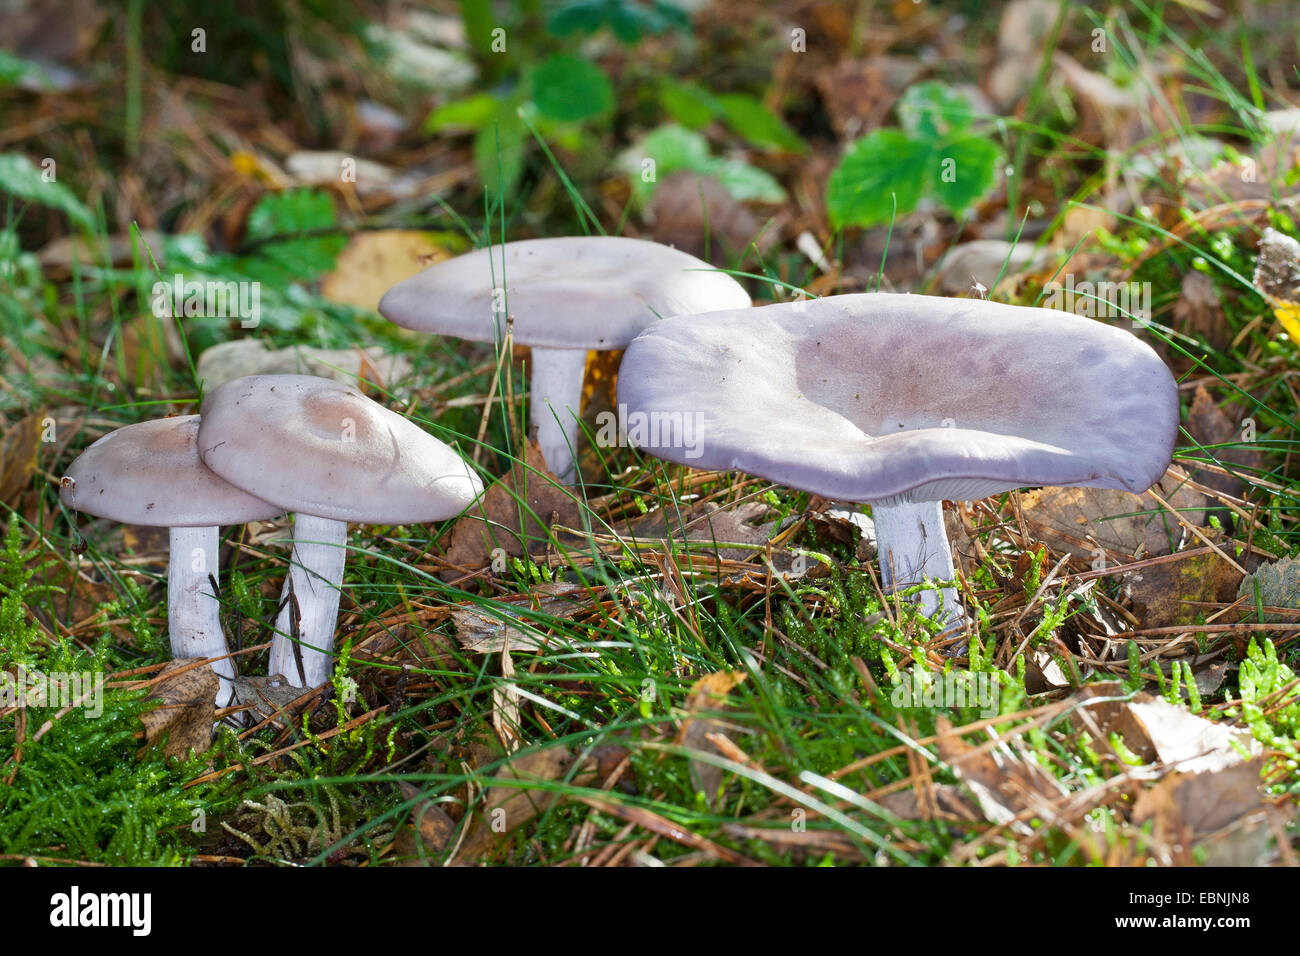 Wood blewit (Lepista nuda), quatre organes de fructification sur le sol forestier, Allemagne Banque D'Images